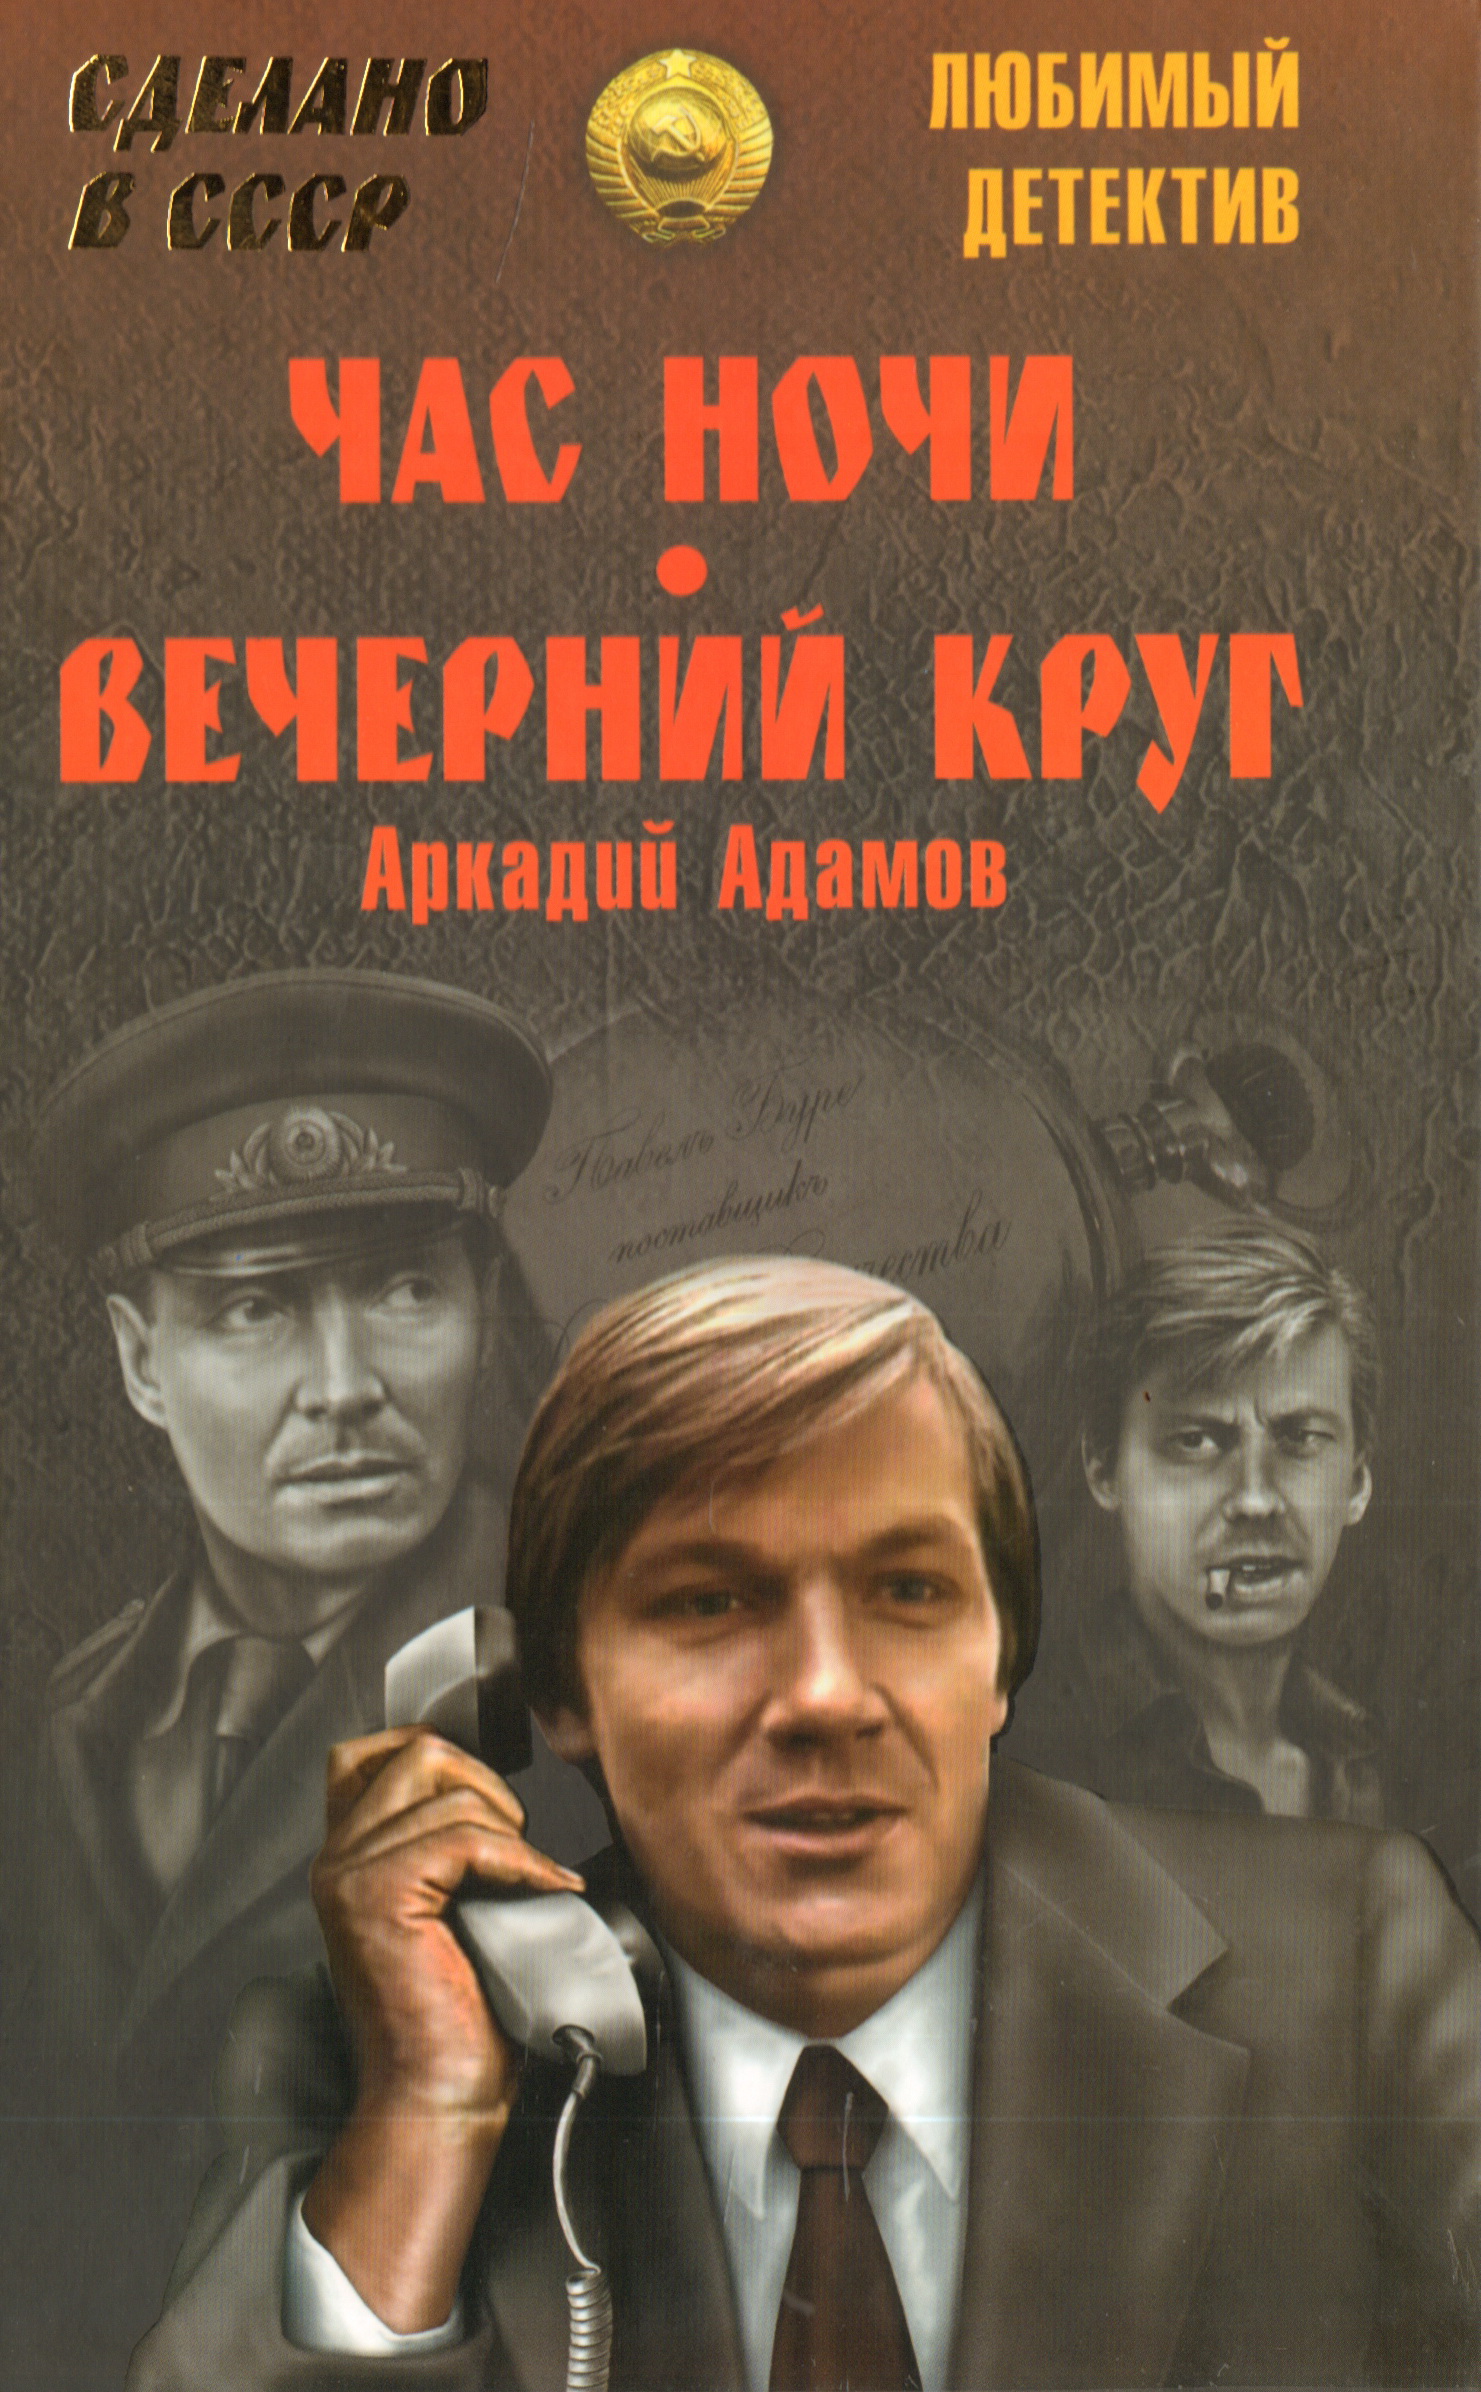 Детективы слушать новинки. Советские детективы. Советские детективы книги.